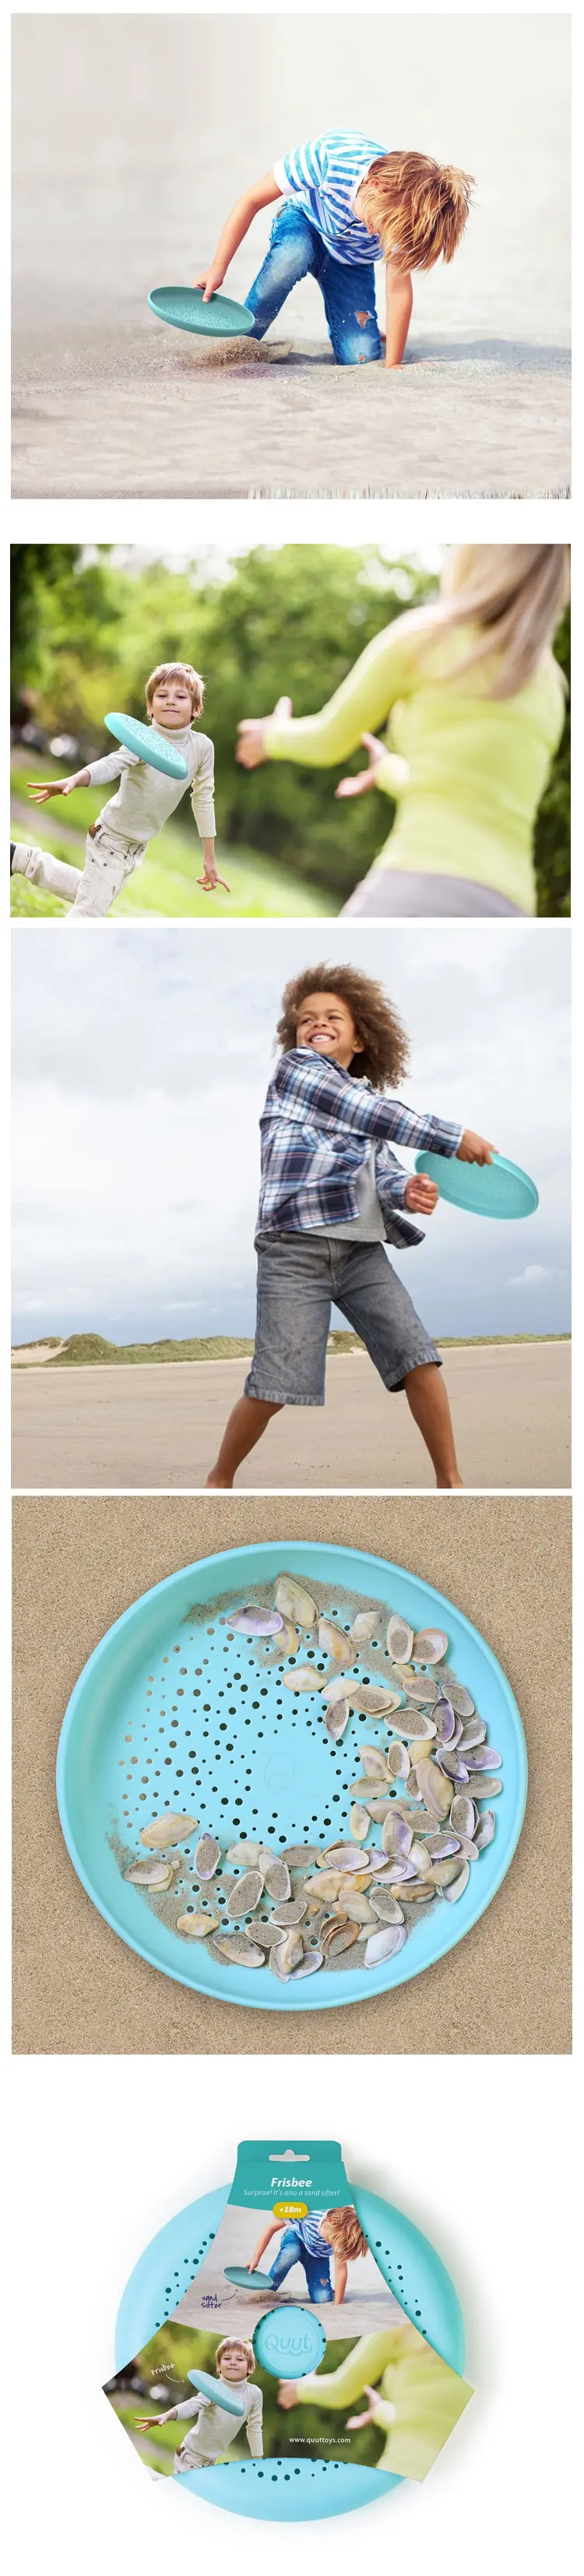 Quut Frisbee 2合1沙滩飞碟